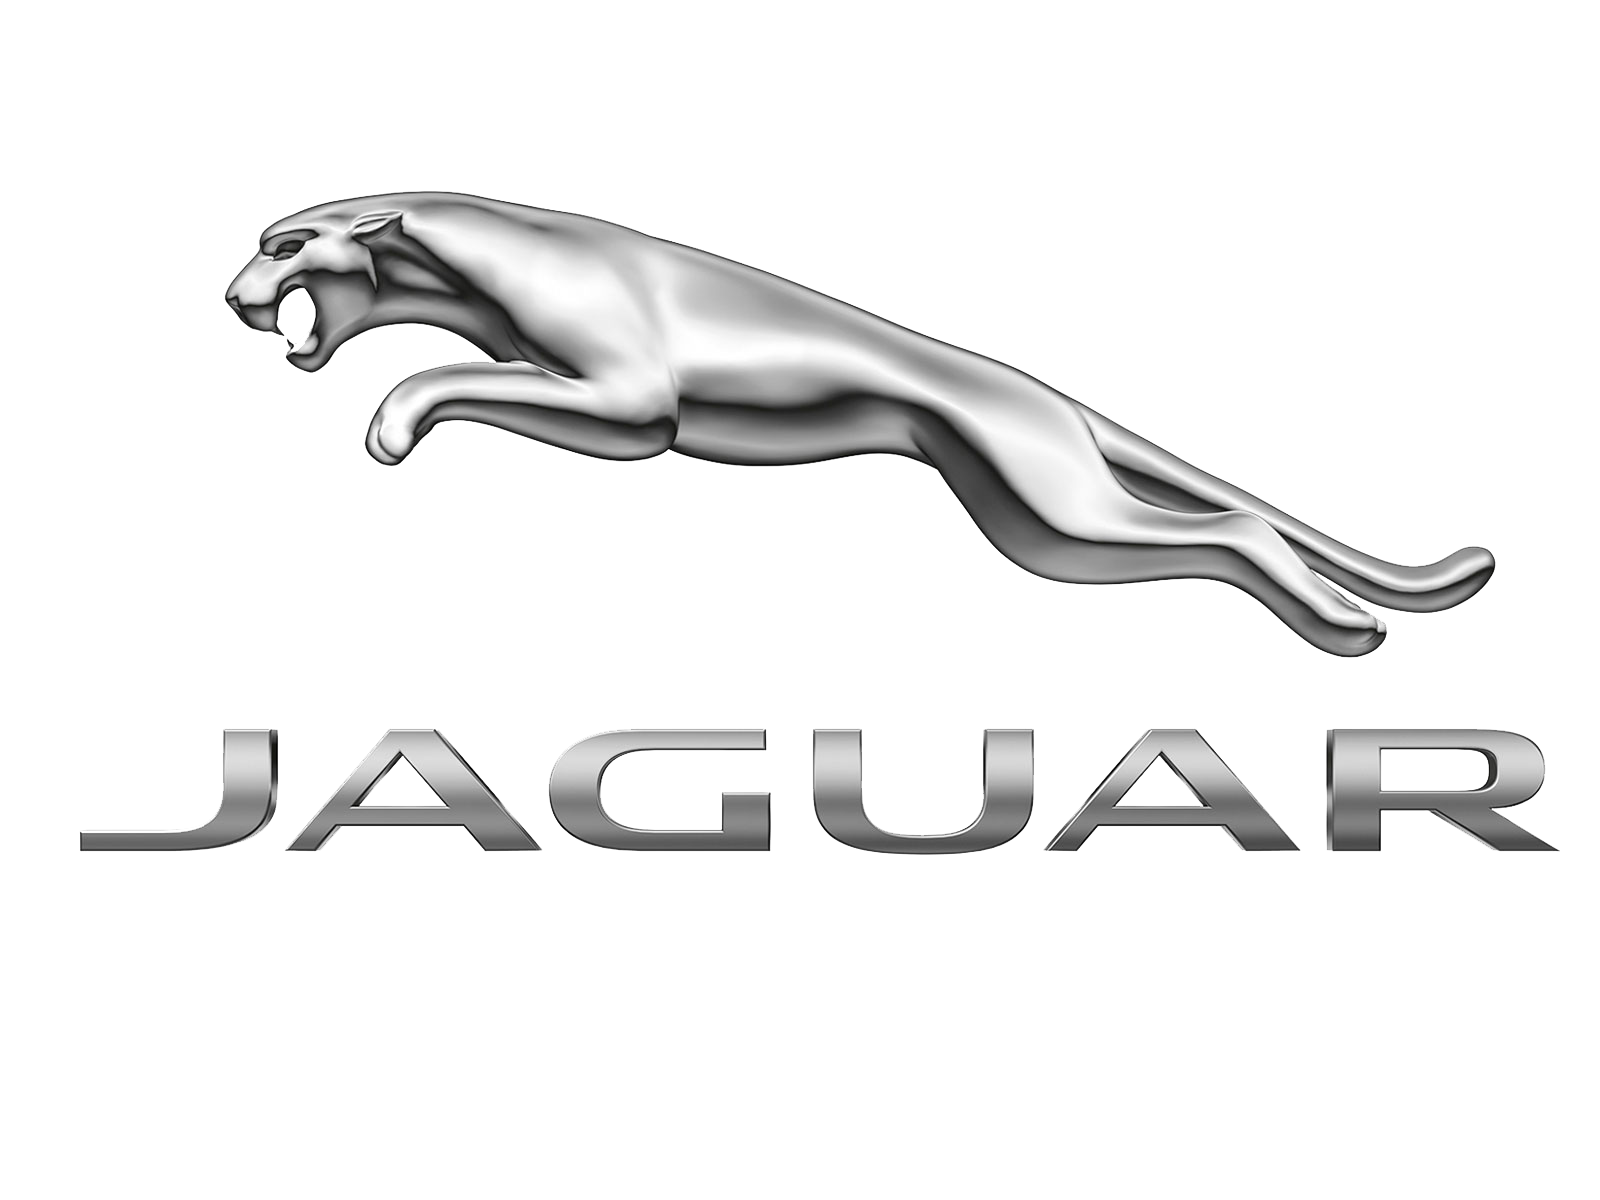 Jaguar logo.png